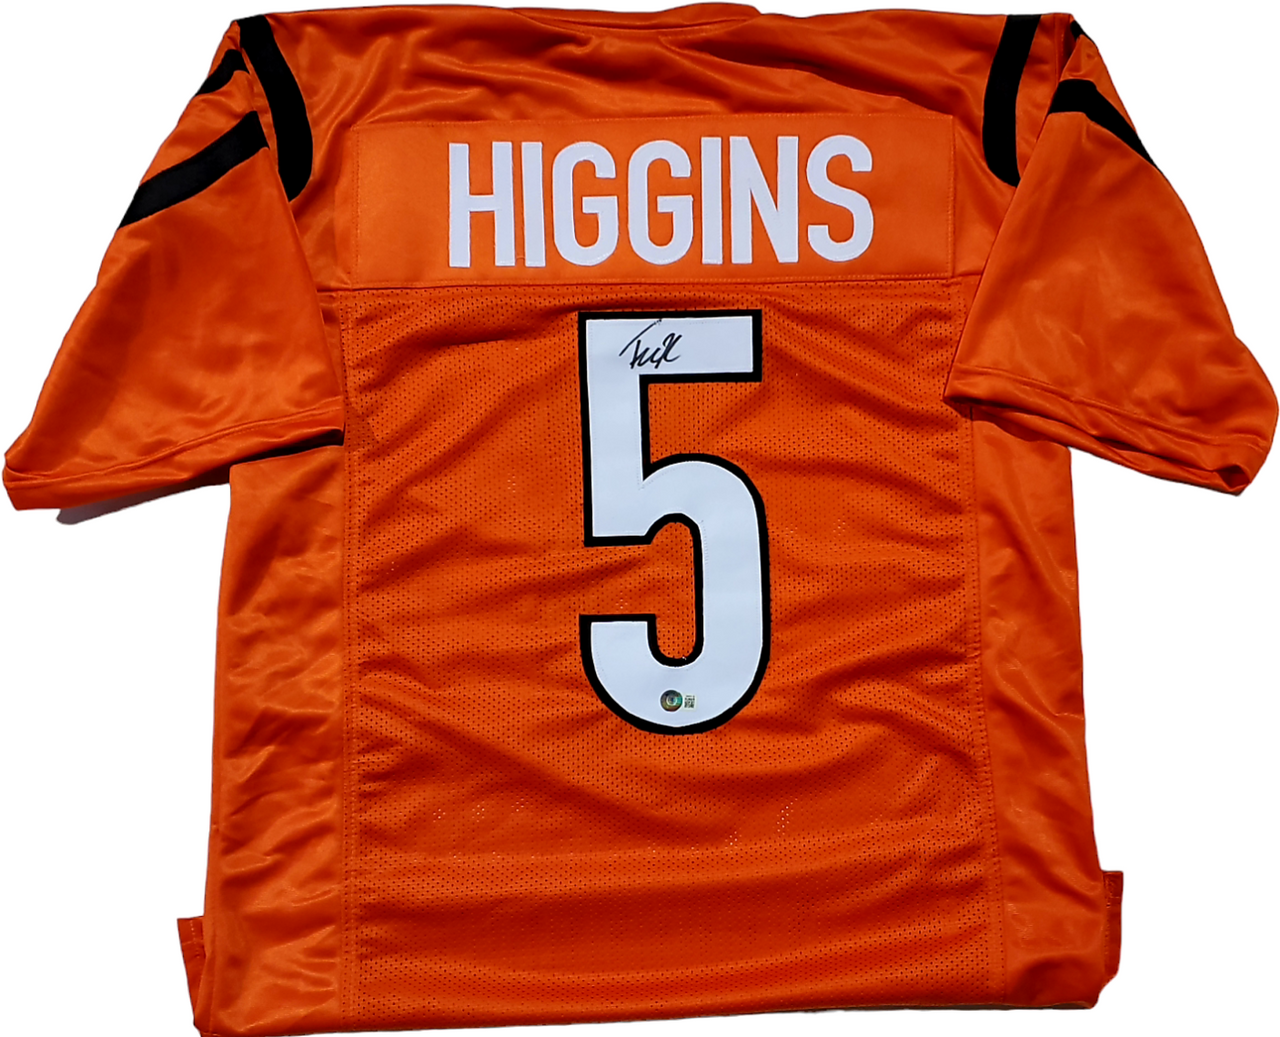 Tee Higgins Cincinnati Bengals Autographed Orange Custom Jersey #5